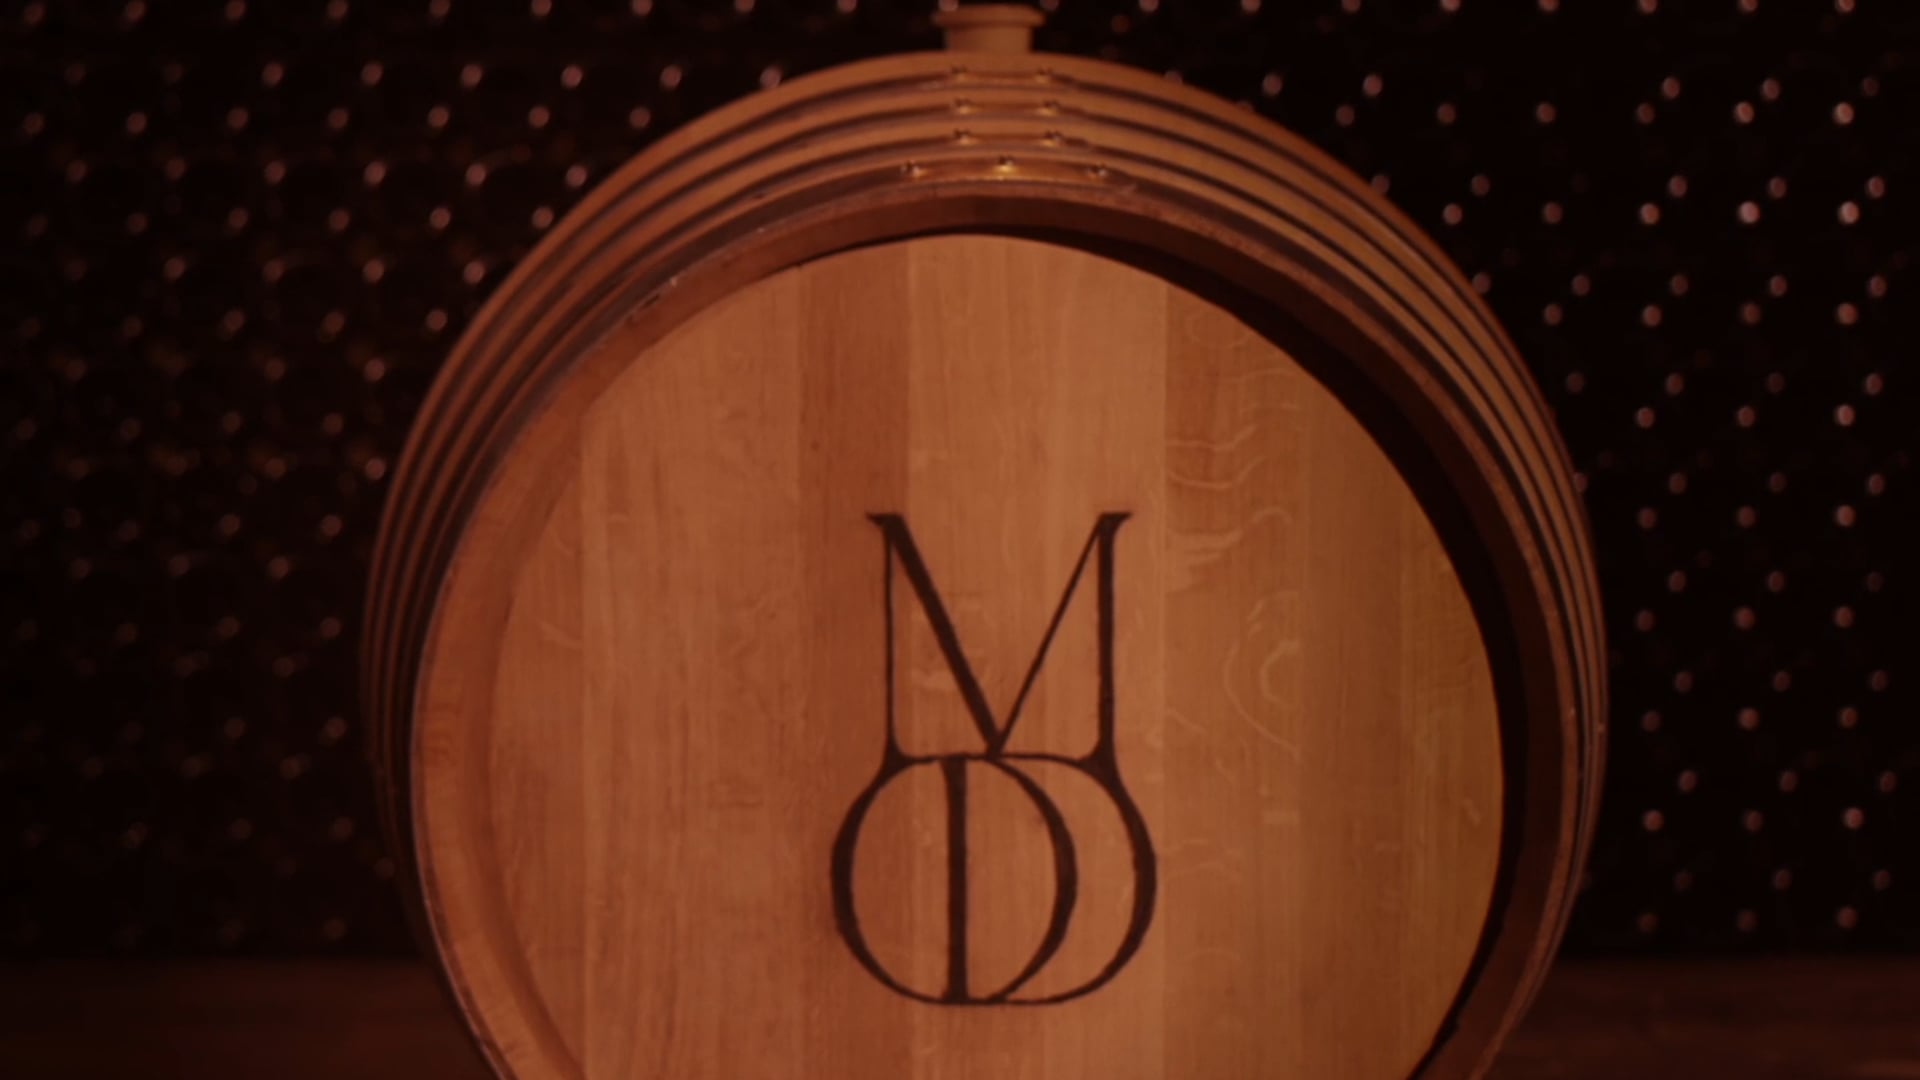 MOD Sélection Champagne - Film Instagram 8/10 - "Âgé" by Shamans Films™